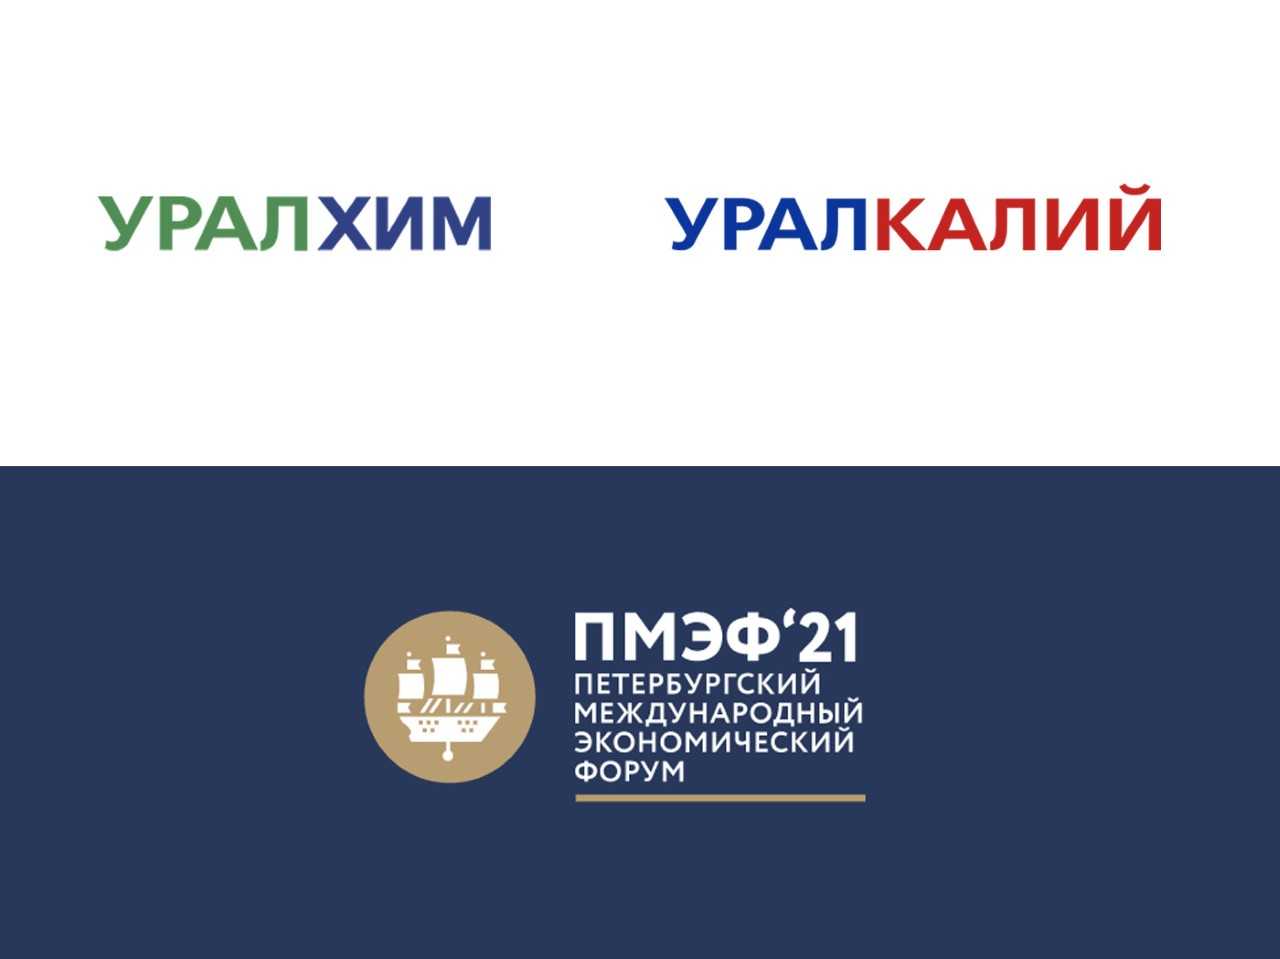 «Уралхим» и «Уралкалий» выступят партнерами ПМЭФ-2021